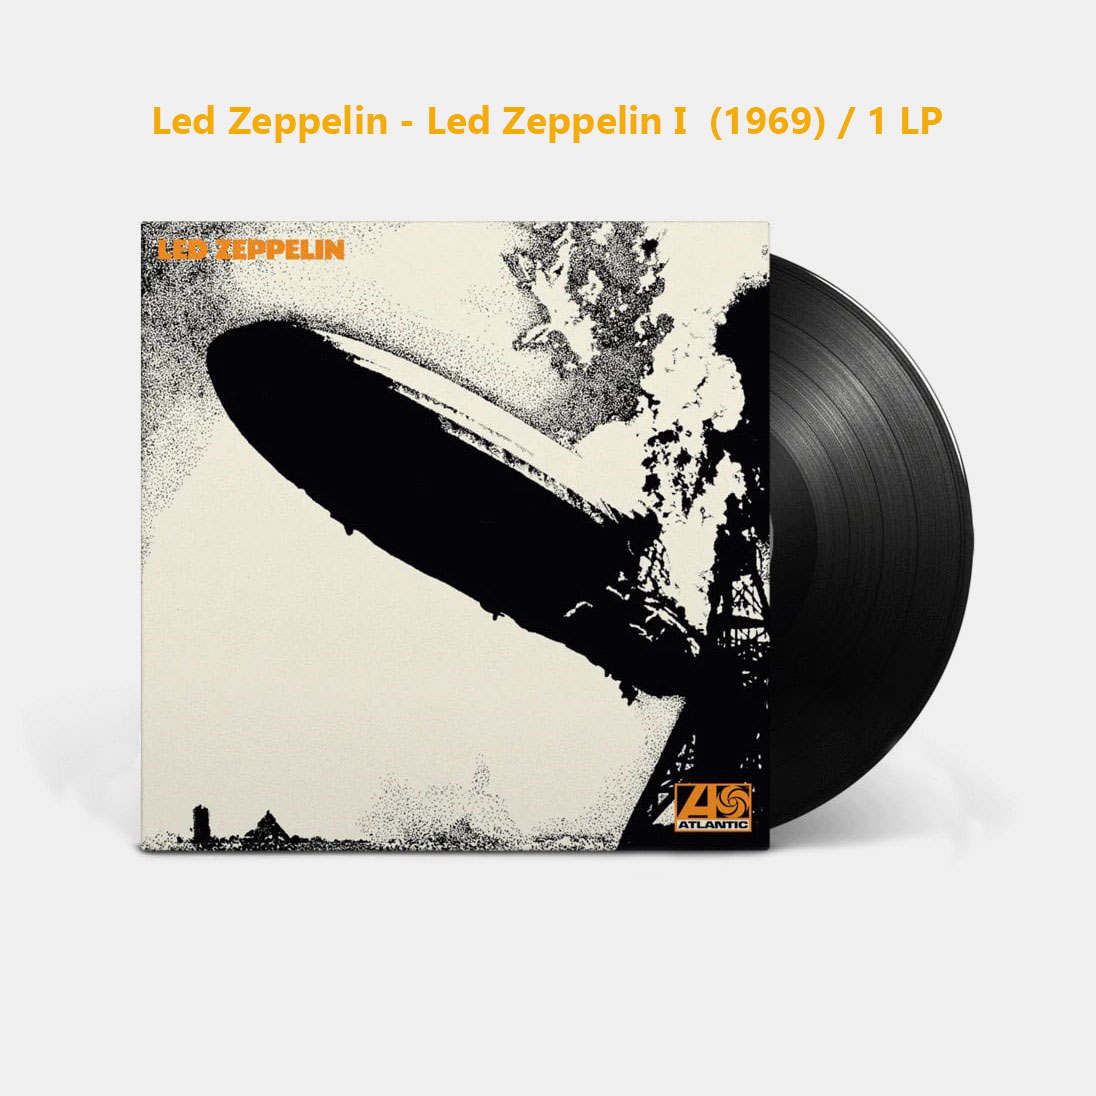 Led Zeppelin - Led Zeppelin I (1969) / 1 LP